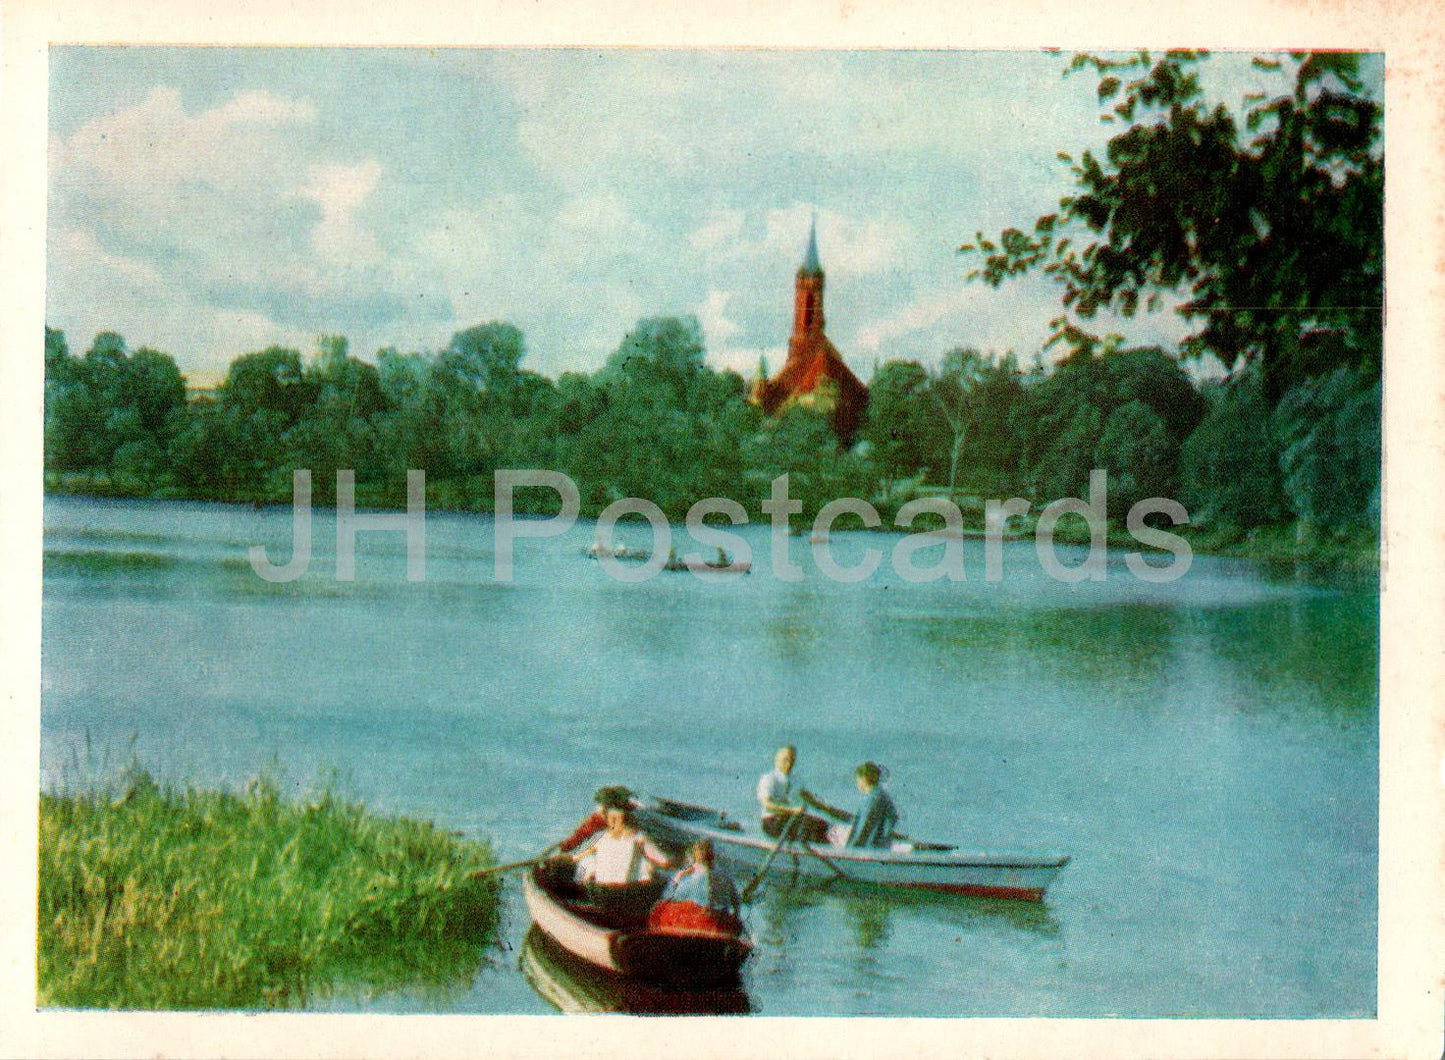 Druskininkai - Lake Druskonis - boat - Lithuania USSR - unused